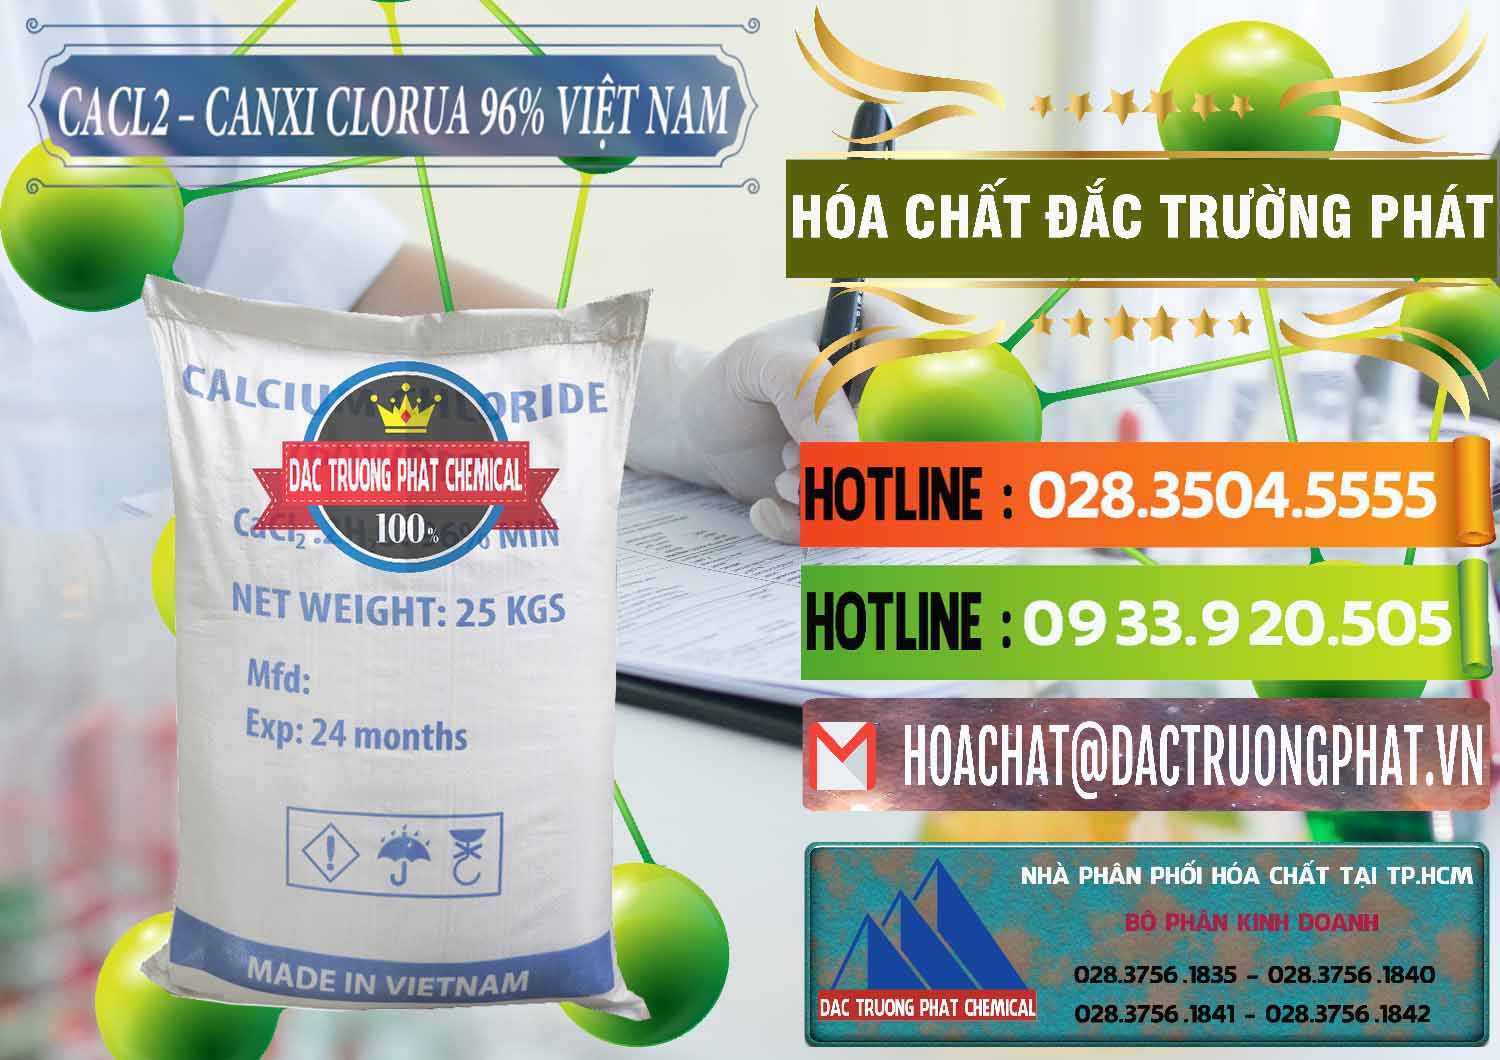 Nơi chuyên bán và phân phối CaCl2 – Canxi Clorua 96% Việt Nam - 0236 - Đơn vị chuyên cung ứng & bán hóa chất tại TP.HCM - cungcaphoachat.com.vn